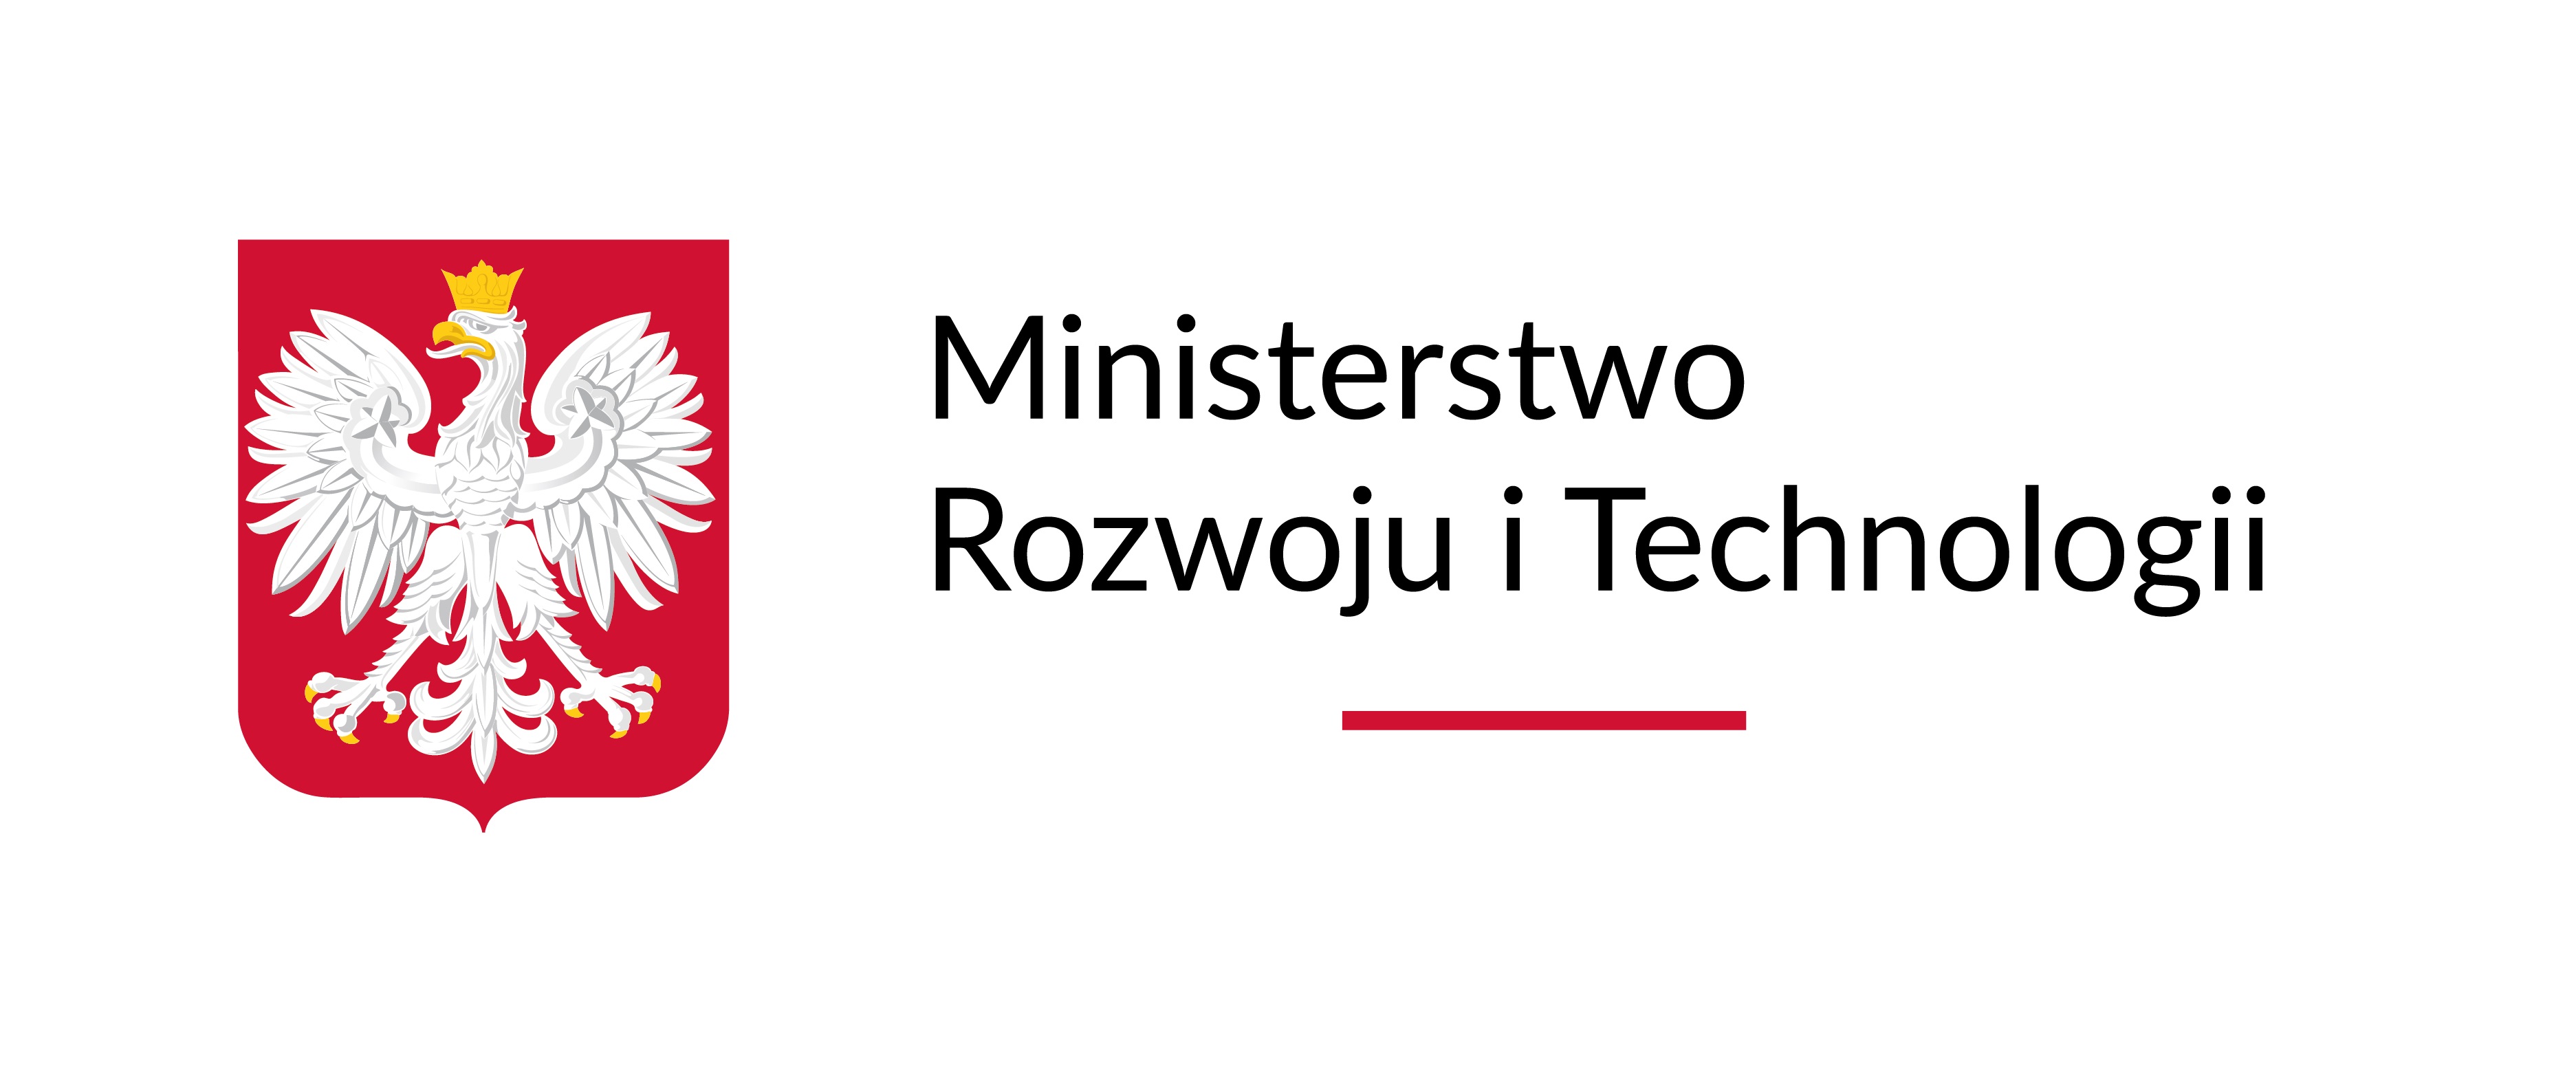 Ministerstwo Rozwoju i Technologii - belka